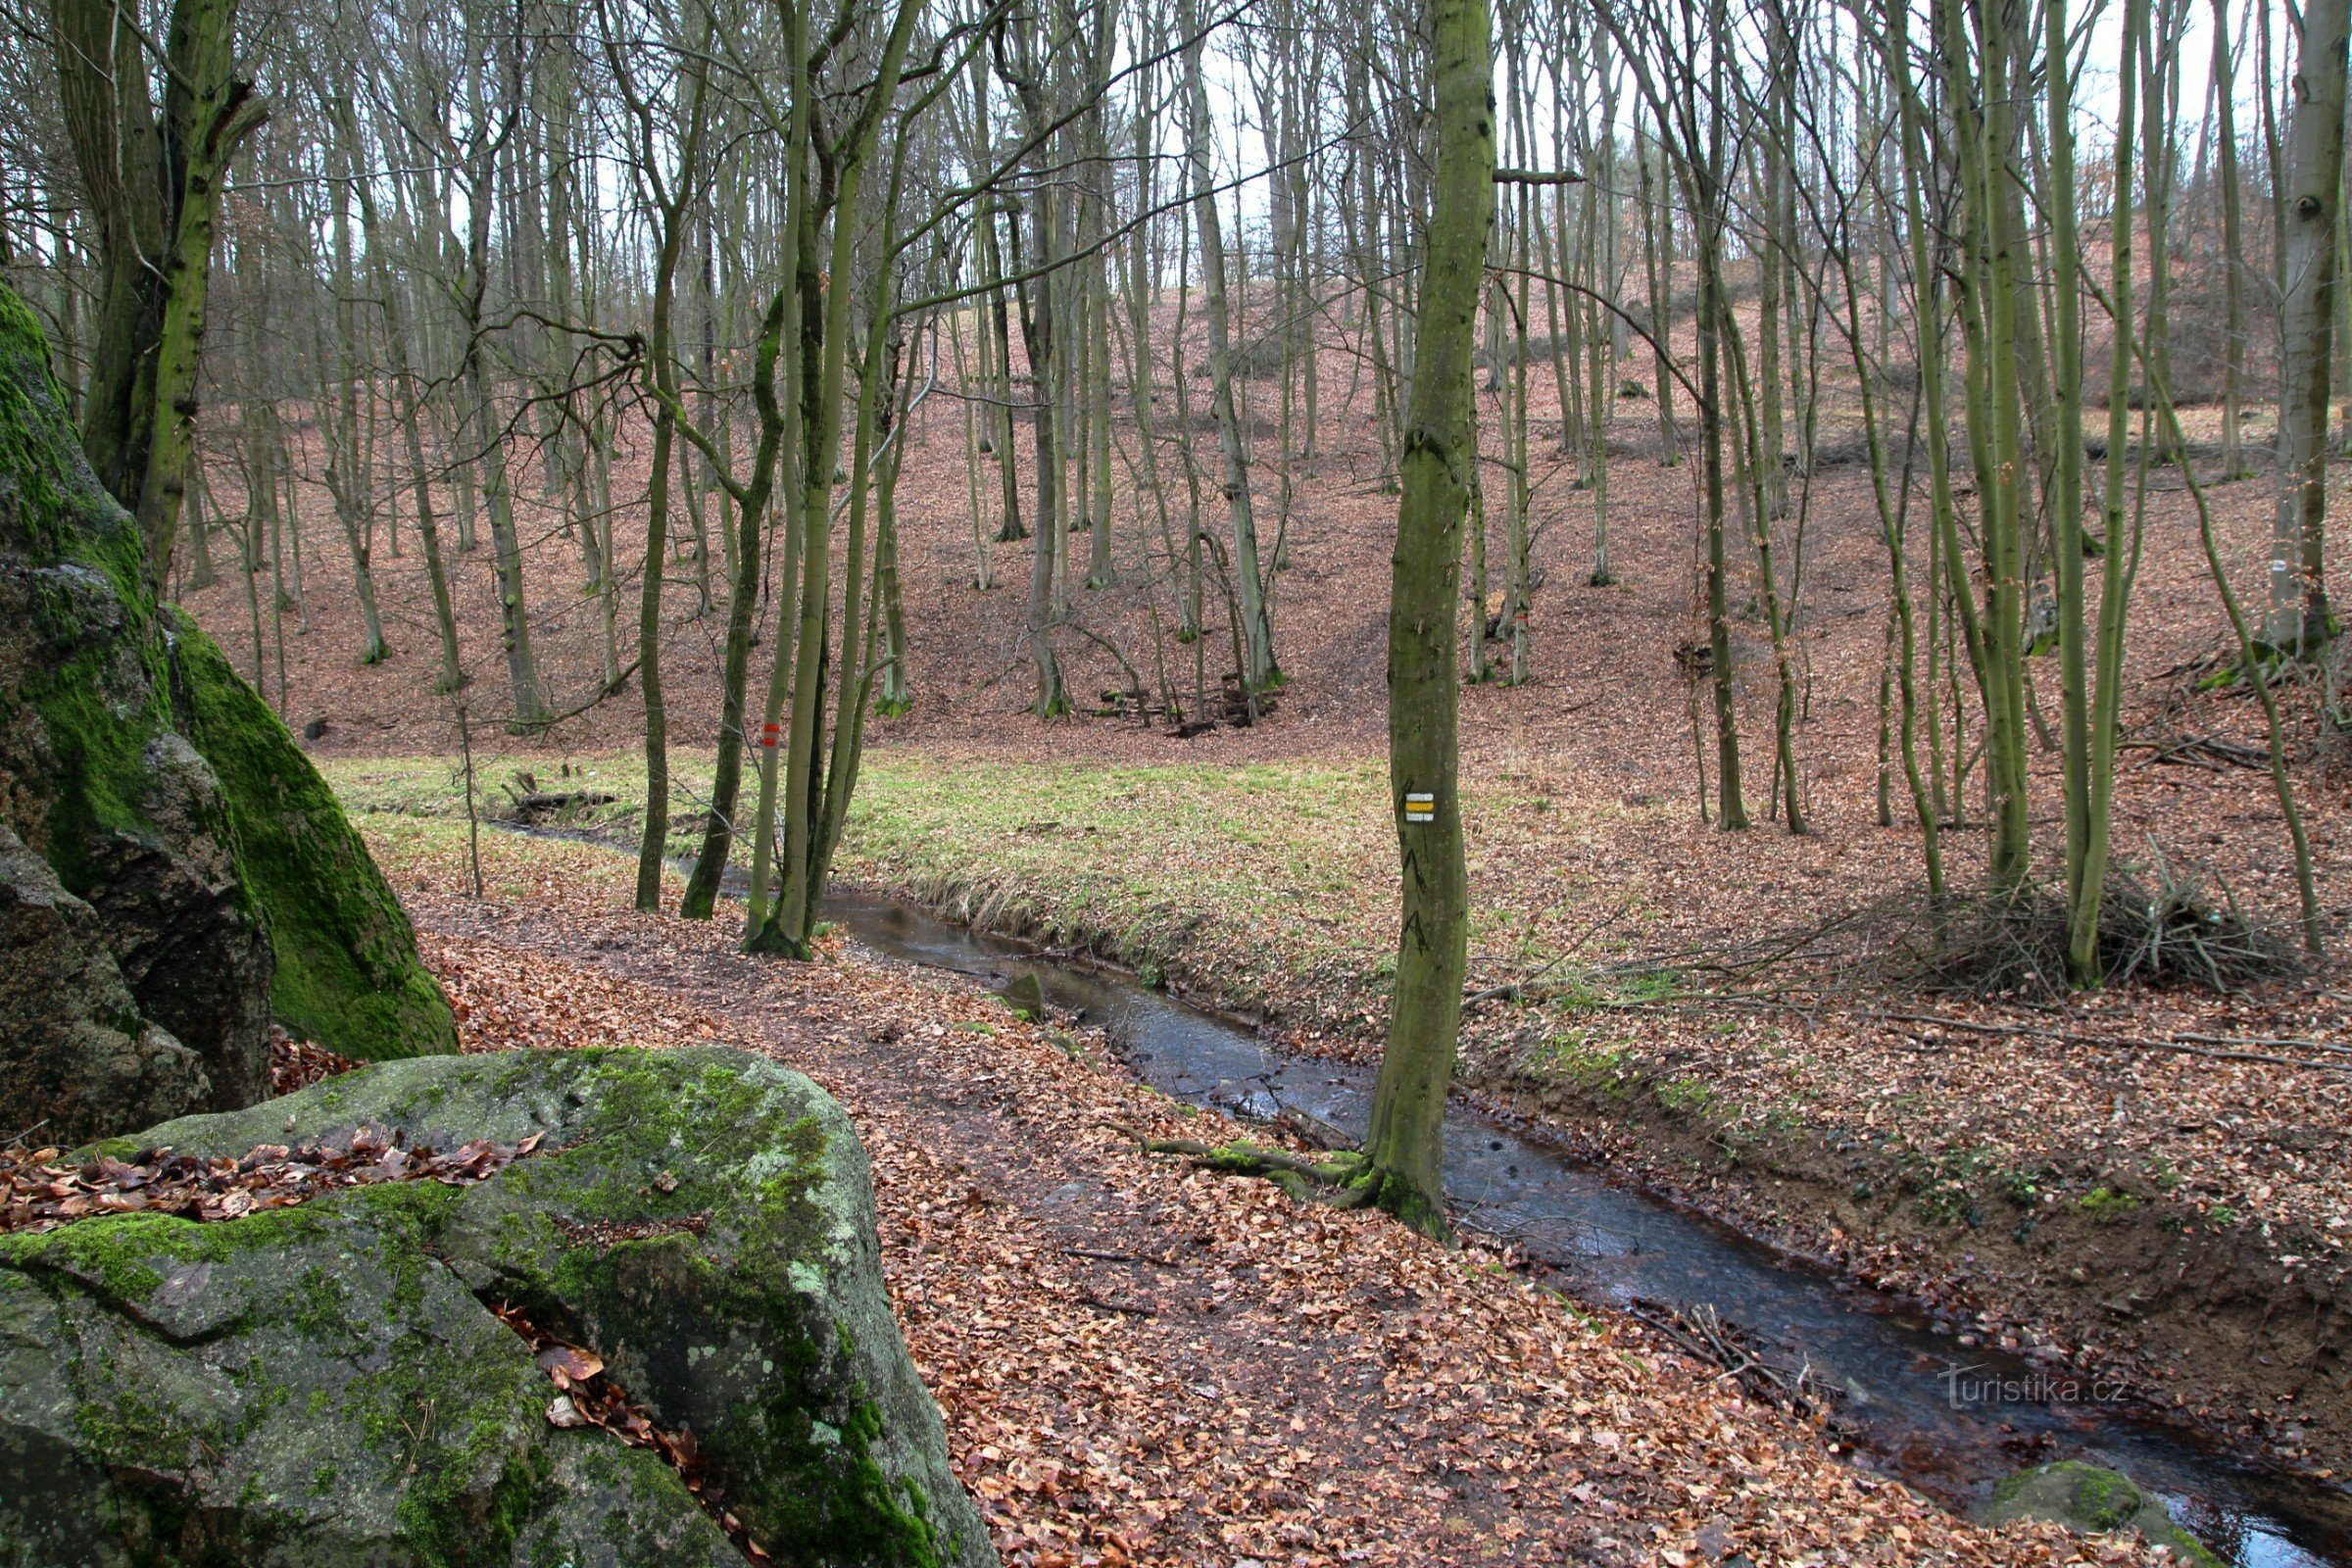 Afloramentos rochosos no vale do riacho Augšperské, uma trilha de caminhada ao redor do riacho